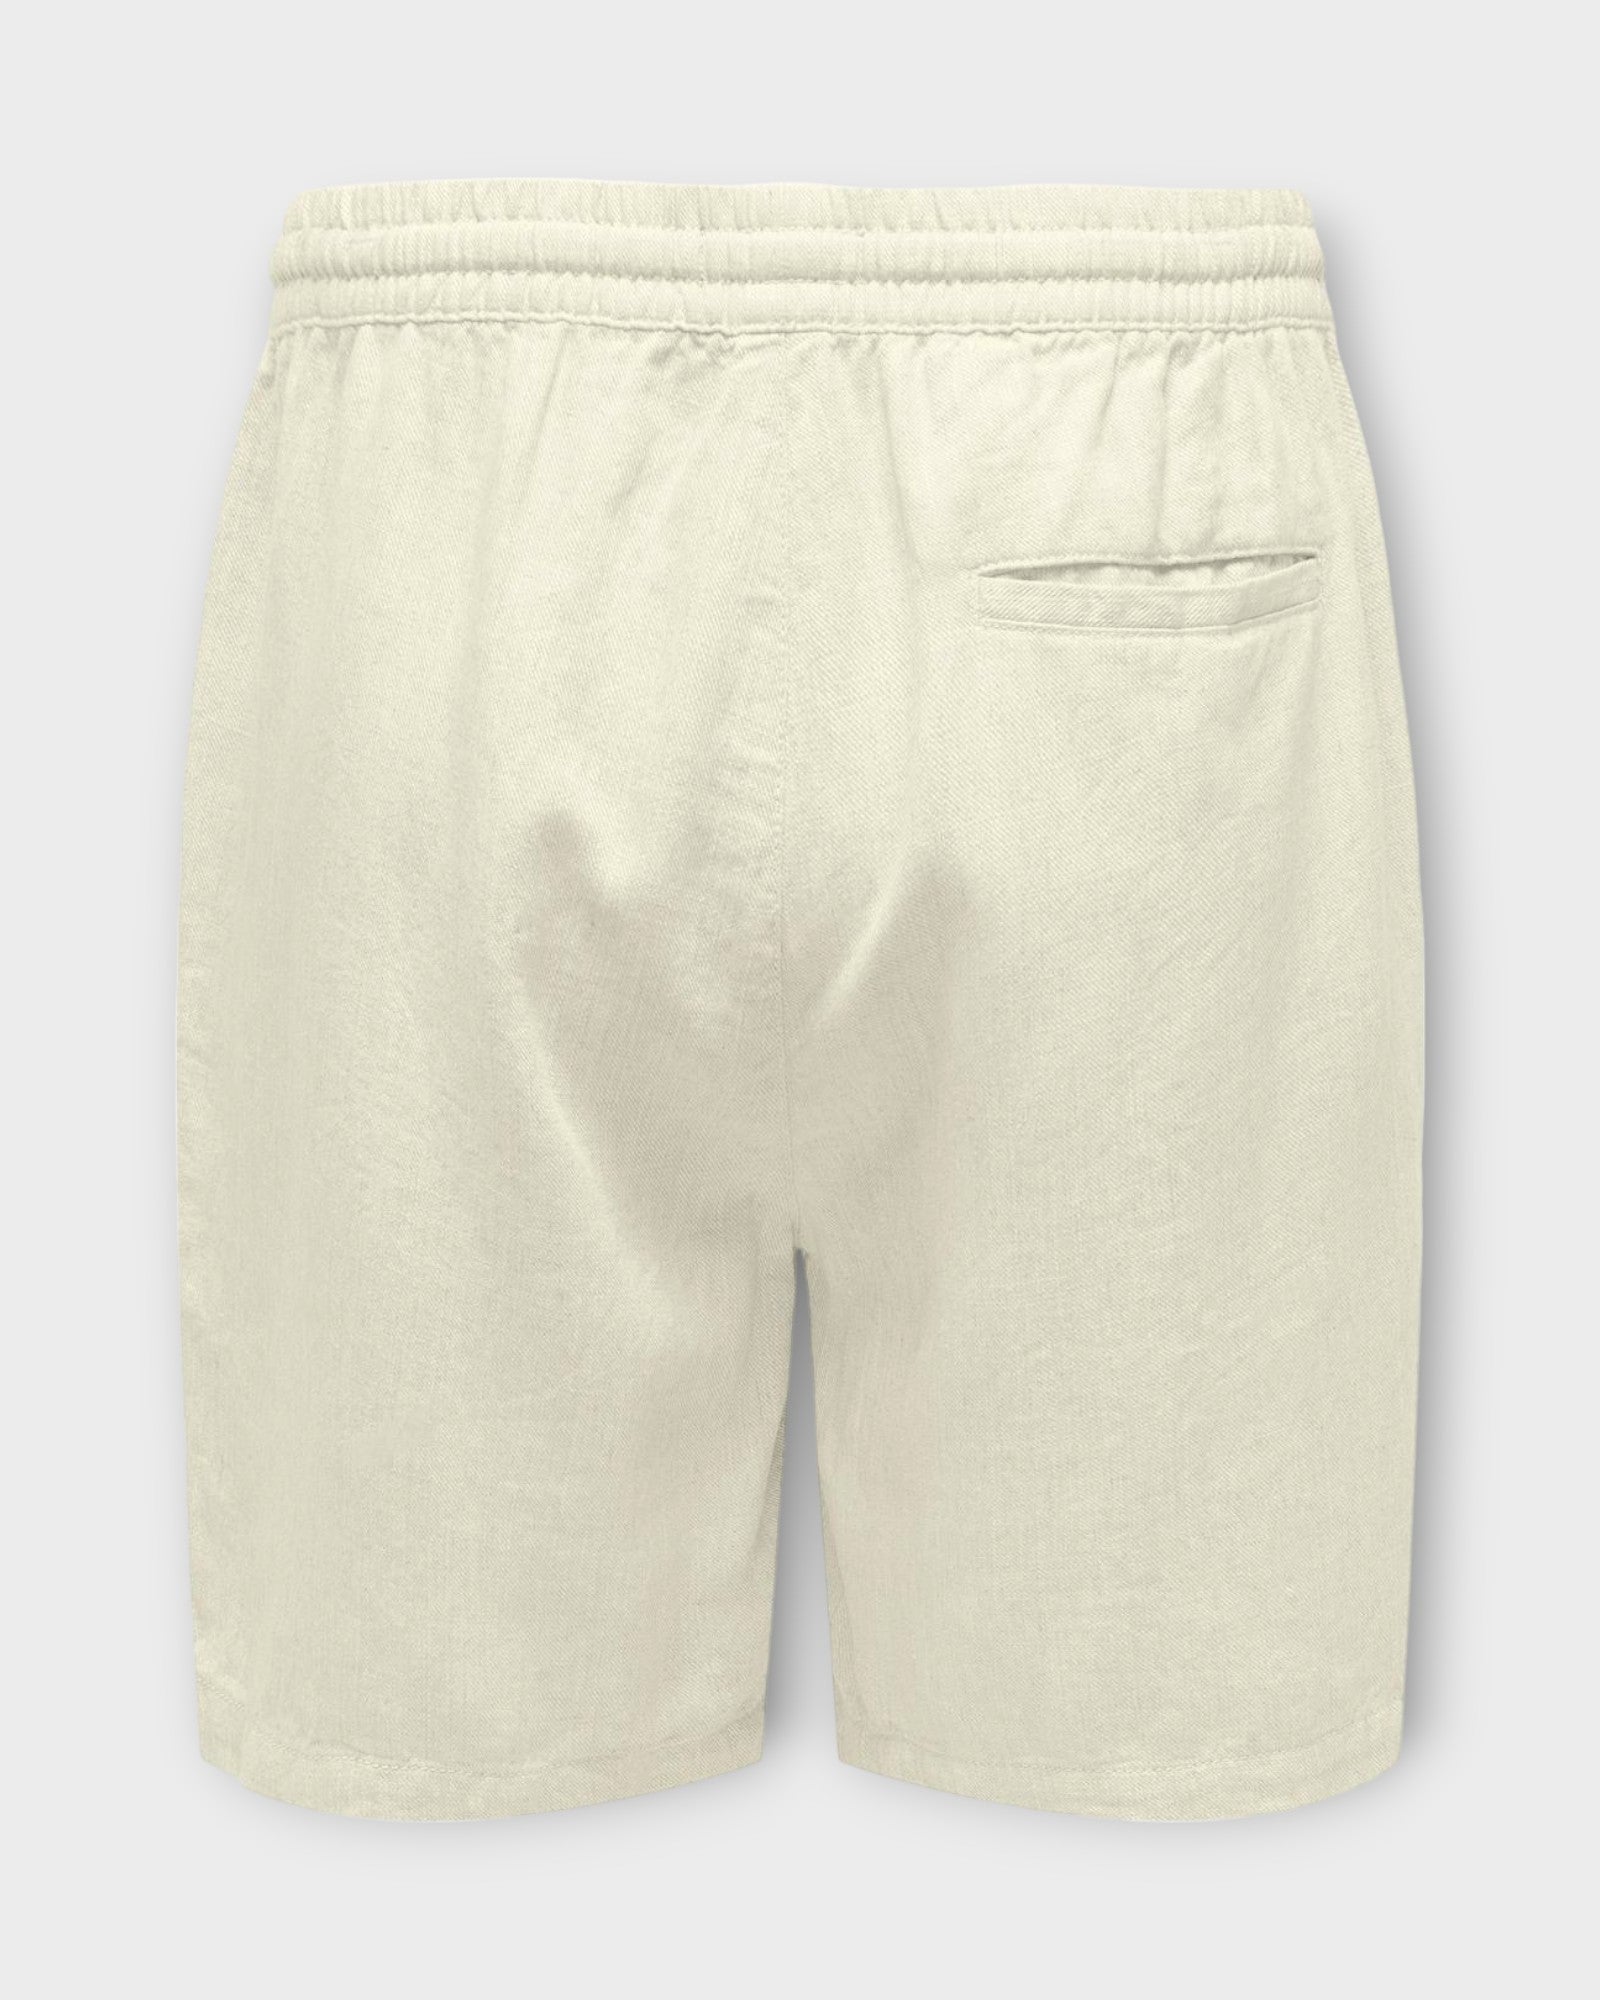 Stel Viscose Linen Shorts White fra Only and Sons. Hvide hør shorts til mænd med elastik og snører i livet. Her set bagfra.